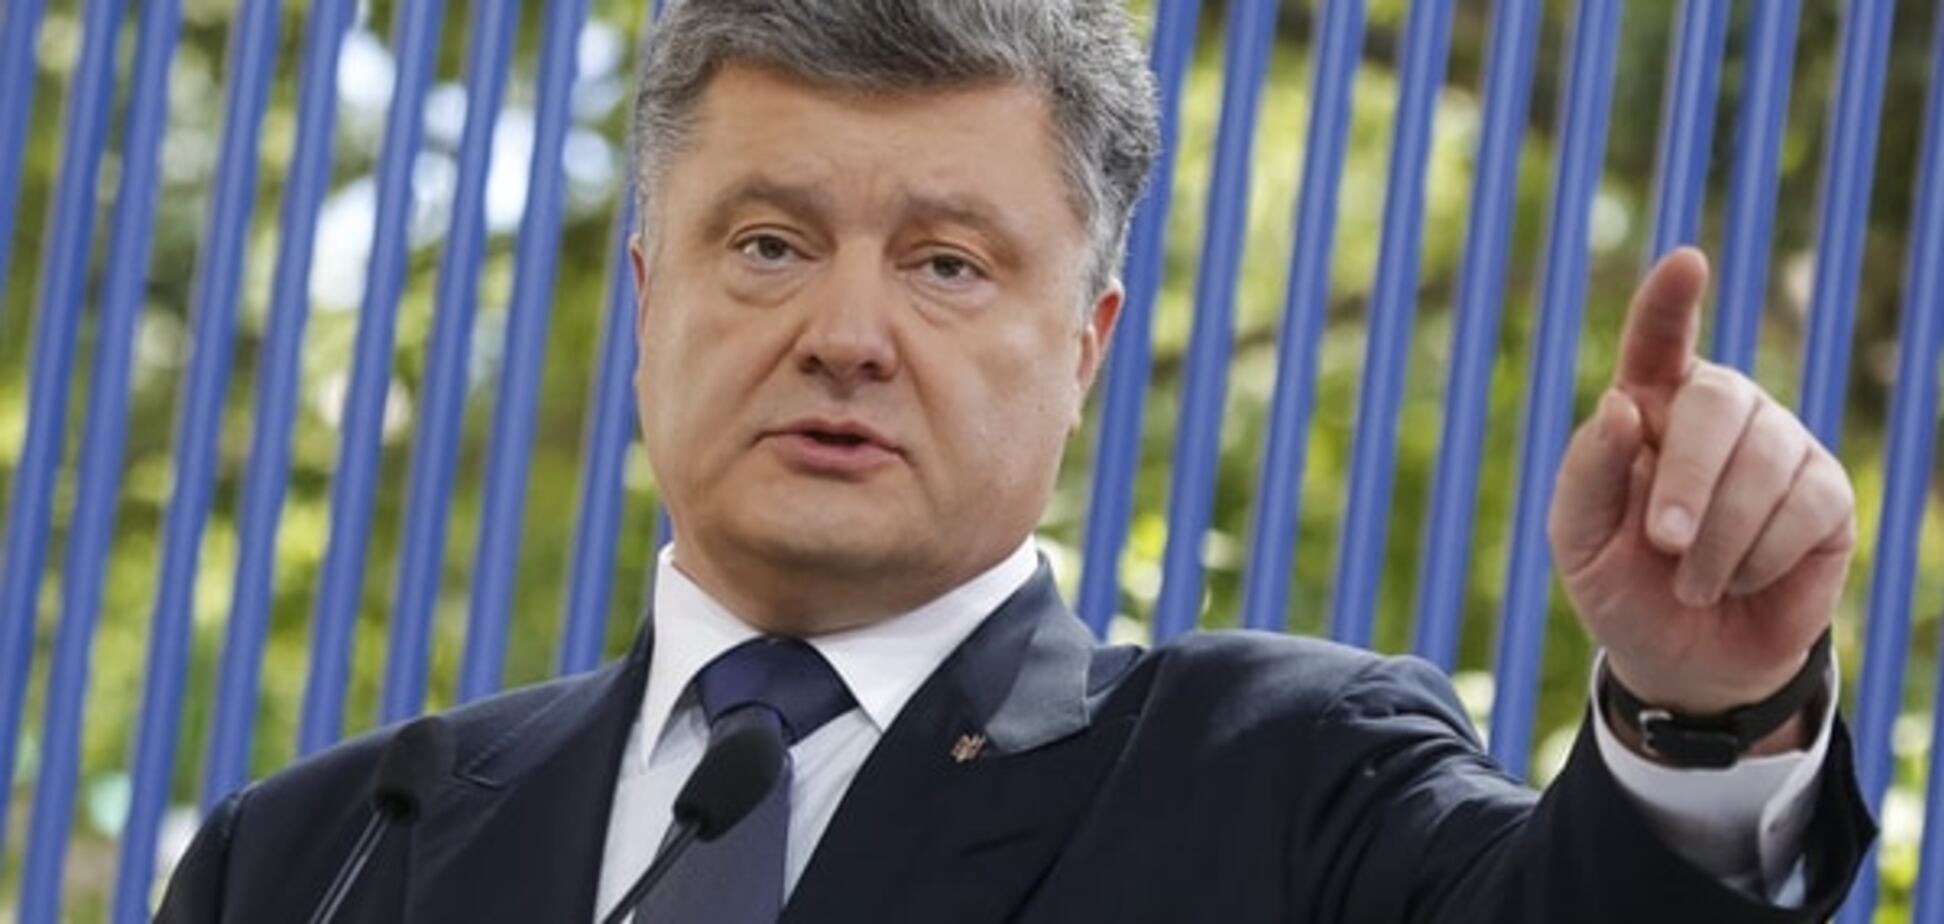 Порошенко підписав закон, яким остаточно поверне Донбас в Україну - експерт